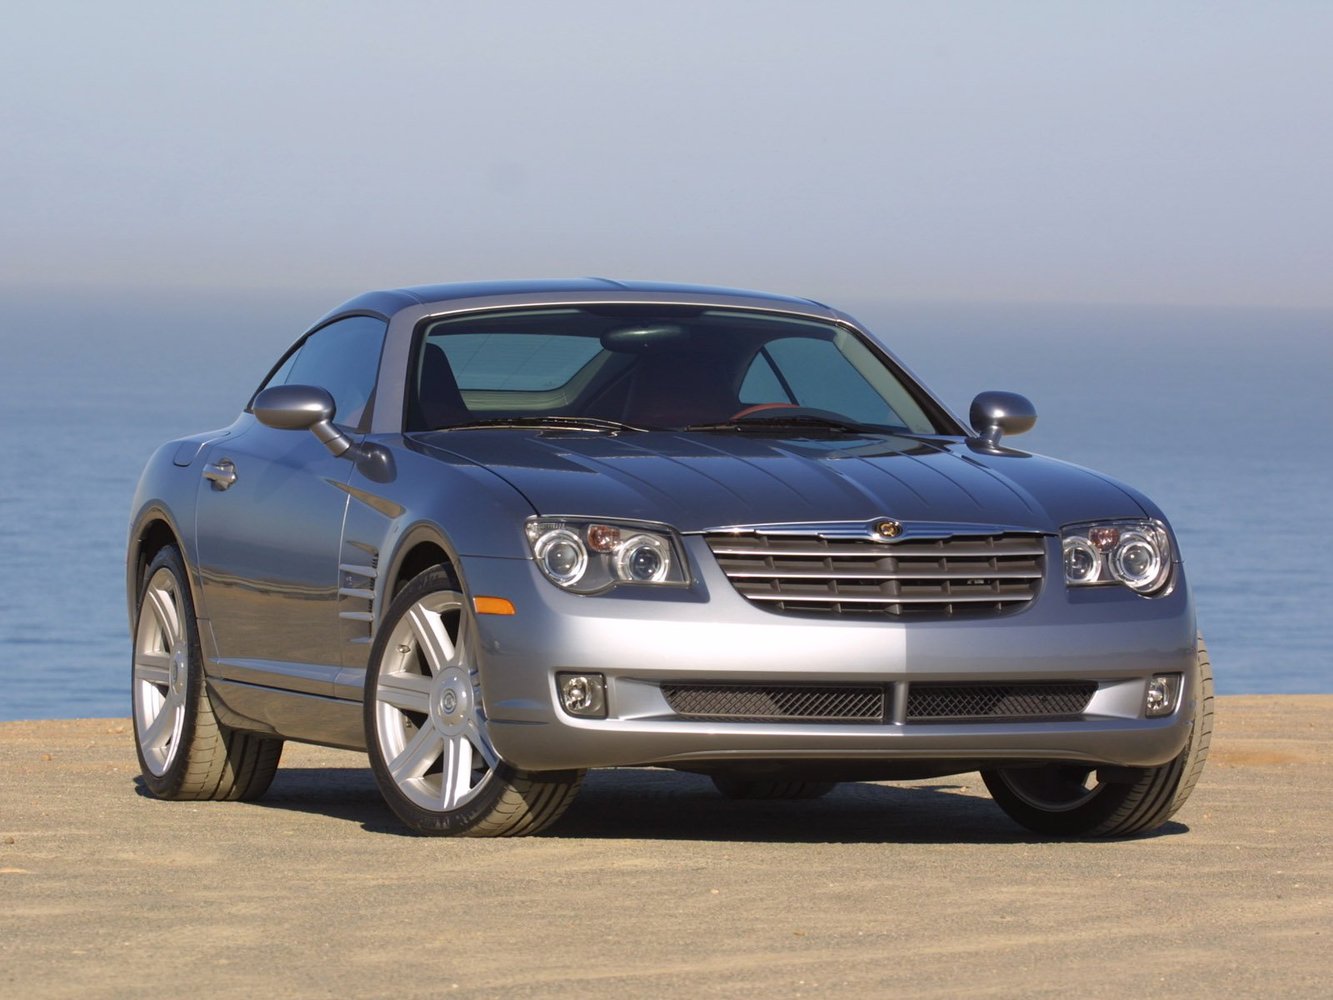 Chrysler Crossfire 2003 - 2008